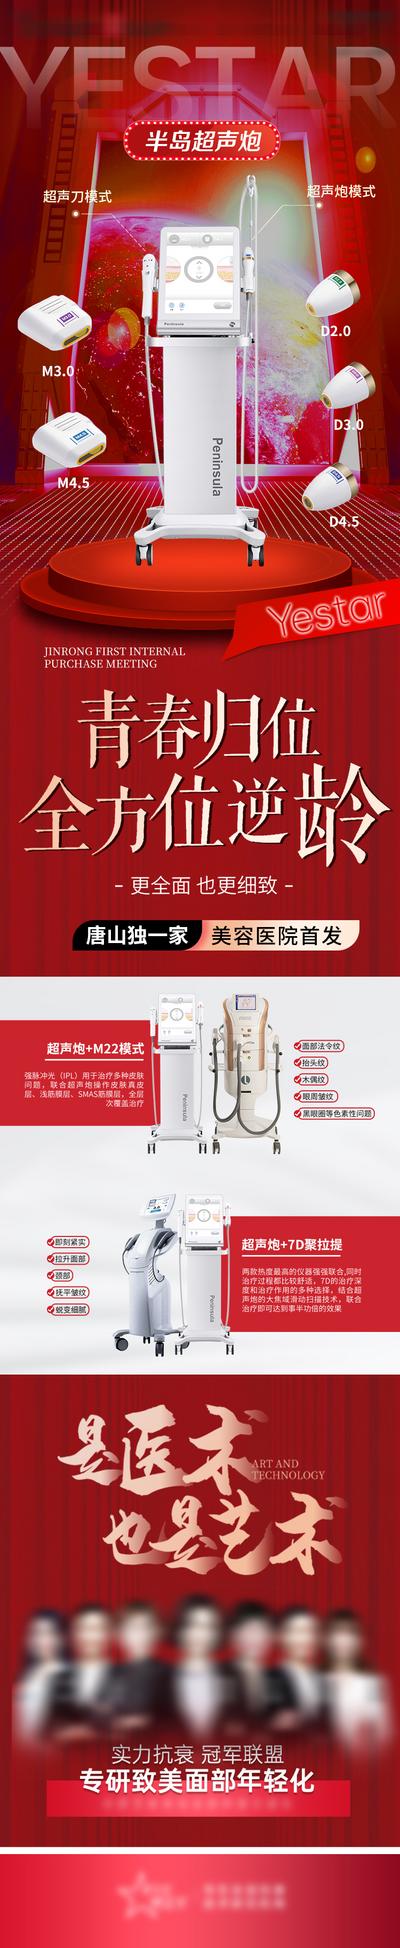 南门网 广告 海报 医美 超声炮 机械 设备 长图 介绍